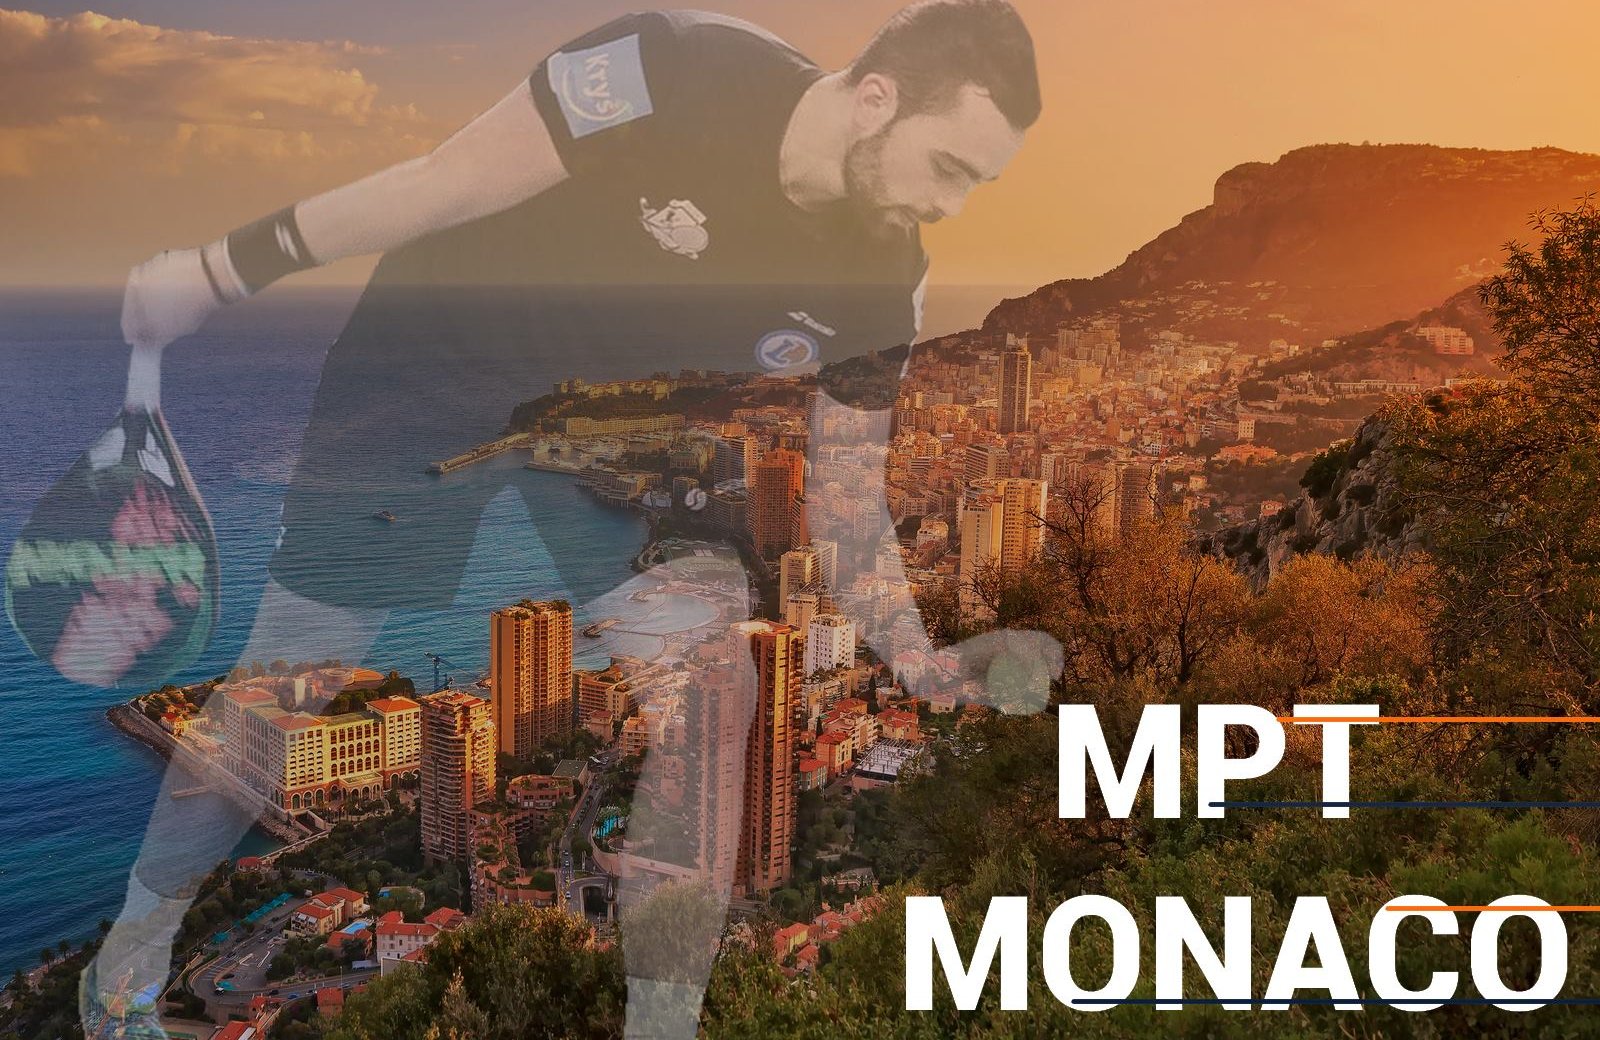 MPT MONACO：登録はオープンです！